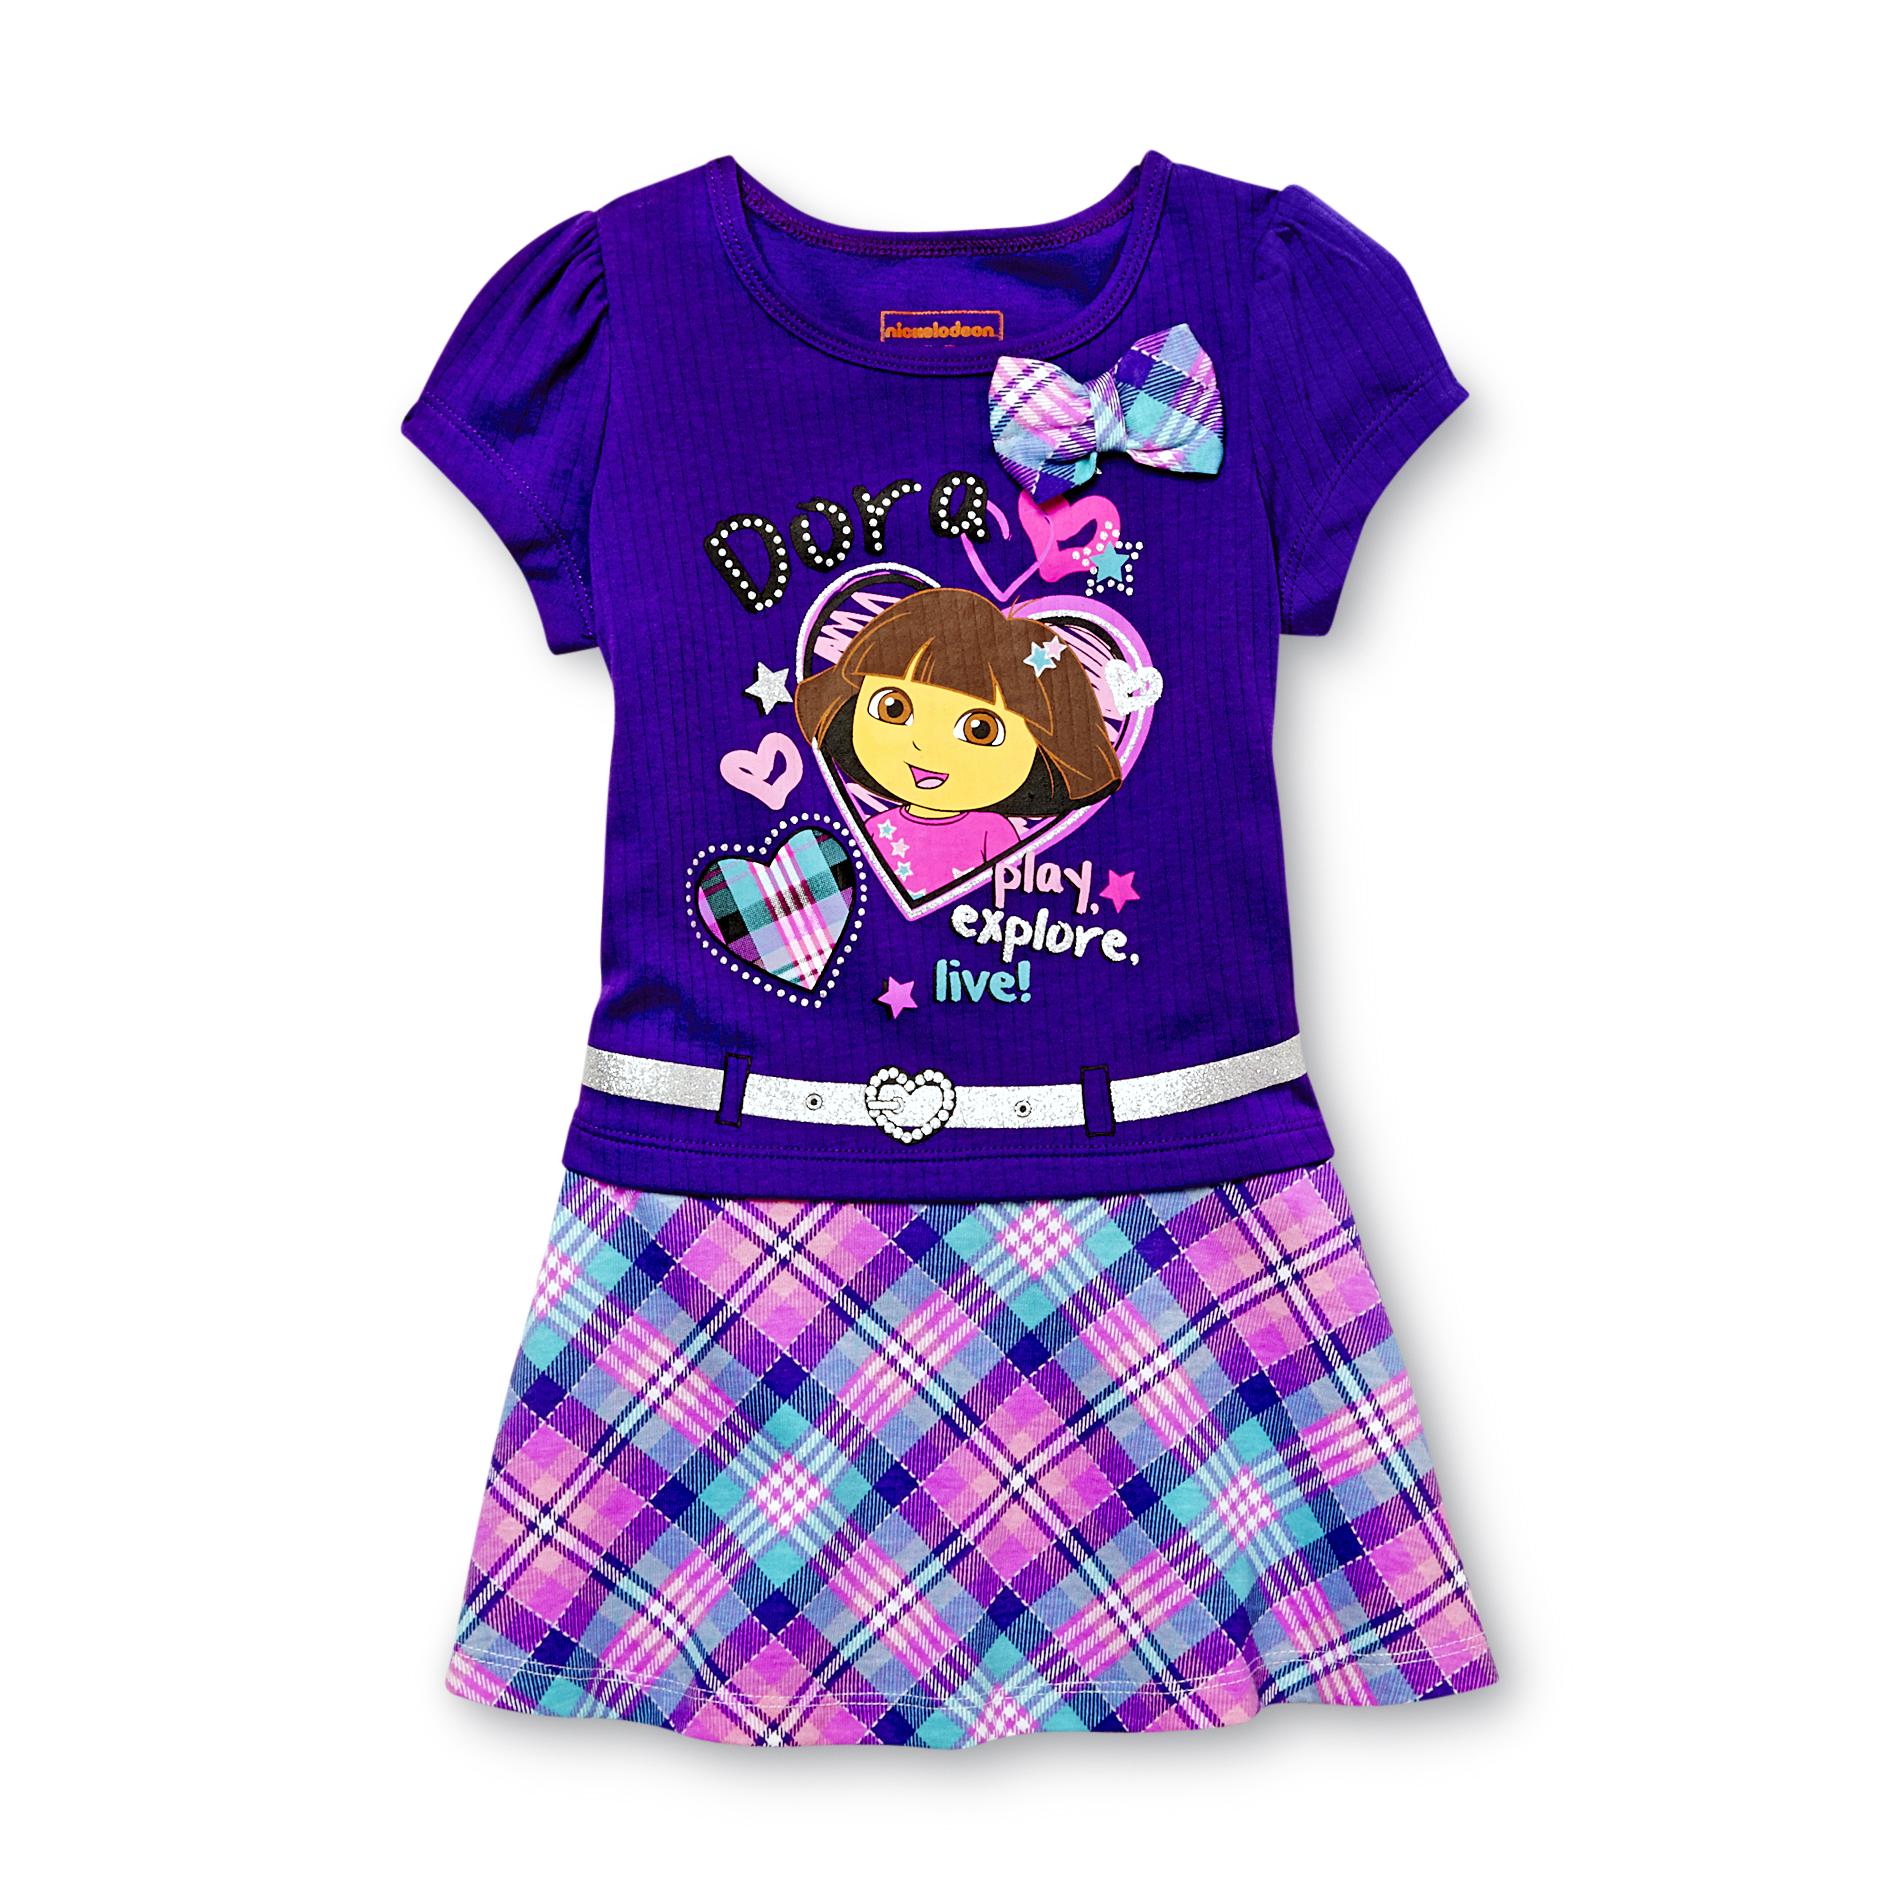 Nickelodeon Toddler Girl's Short Sleeve Dress - Dora